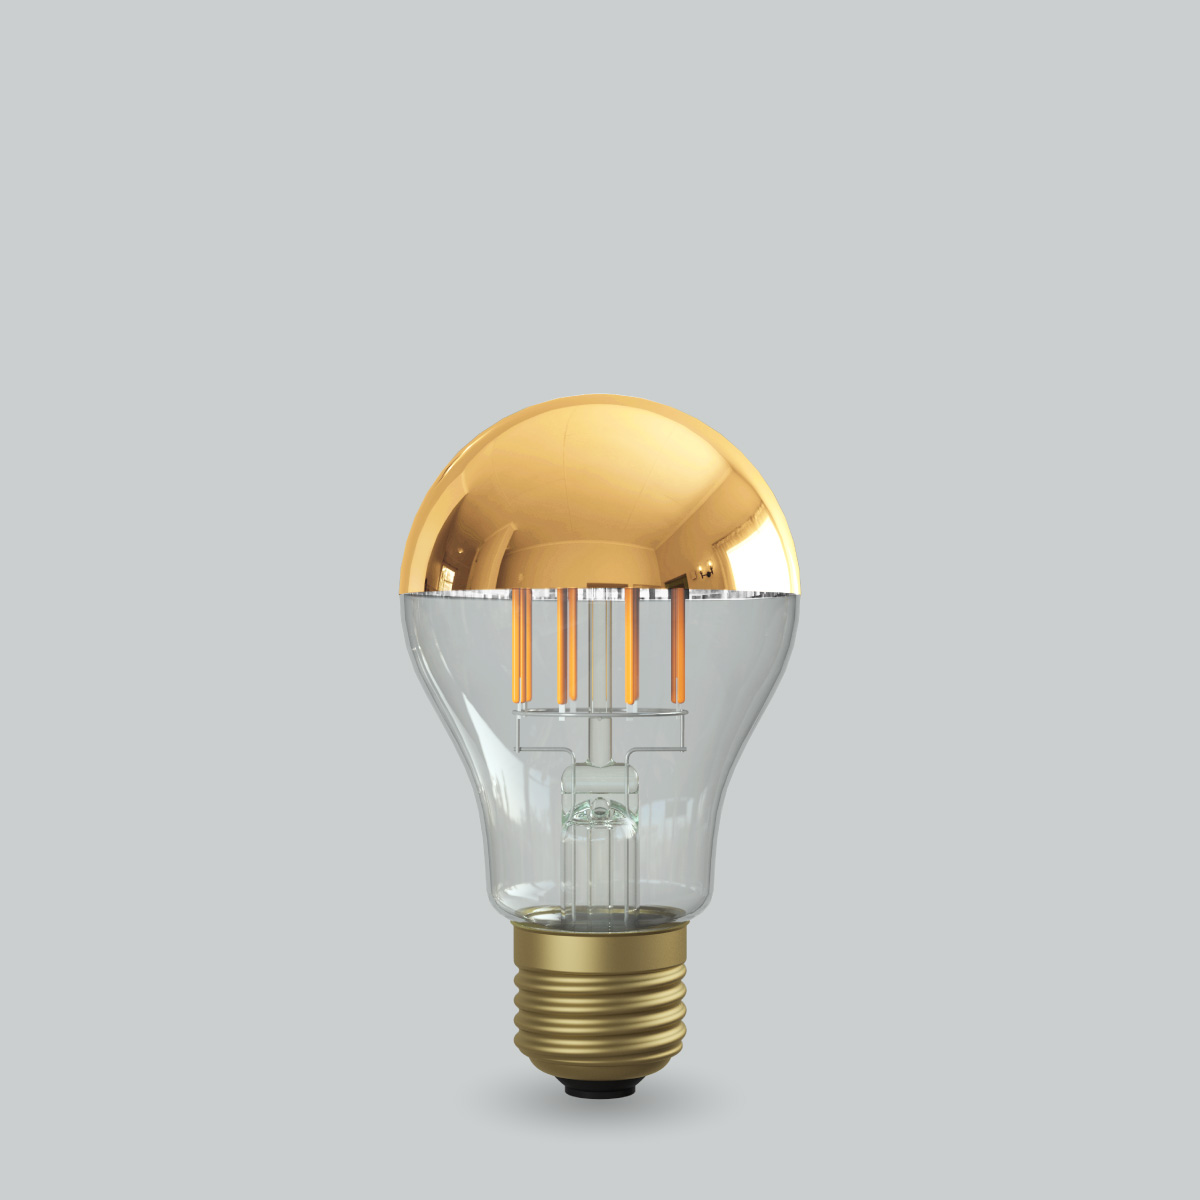 フィラメントLED電球「Siphon」 The Bulb LDF40D Tミラー ザ・バルブ 